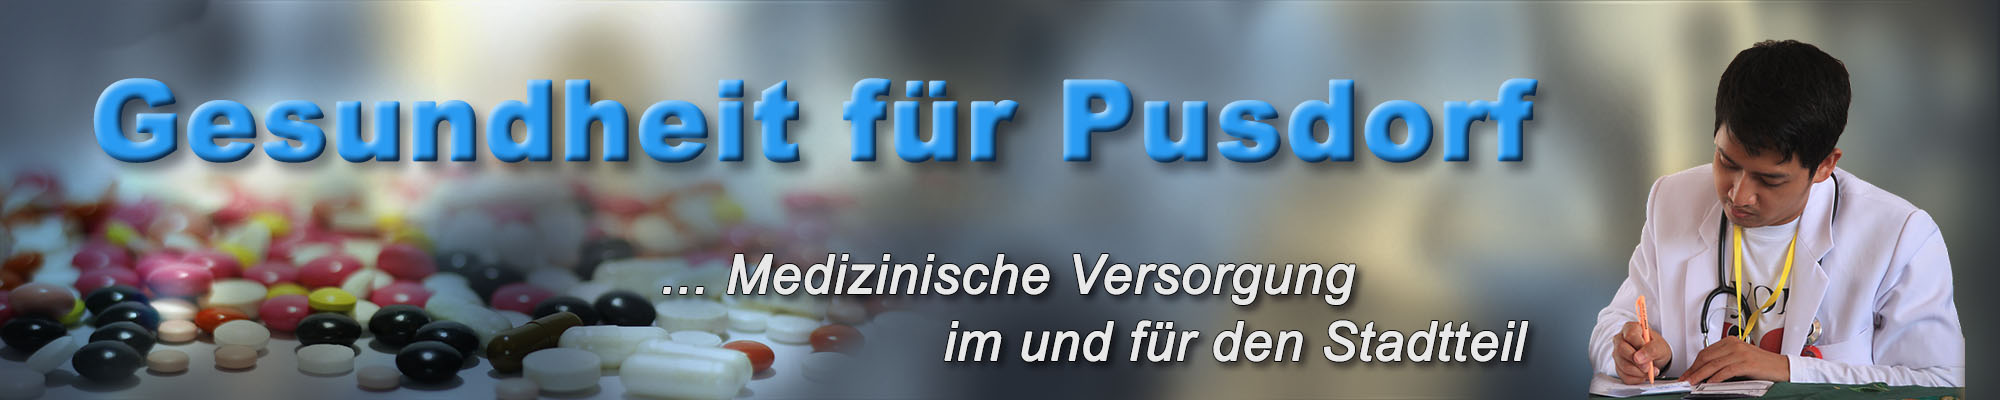 pusdorf.info – Gesundheit und Medizin